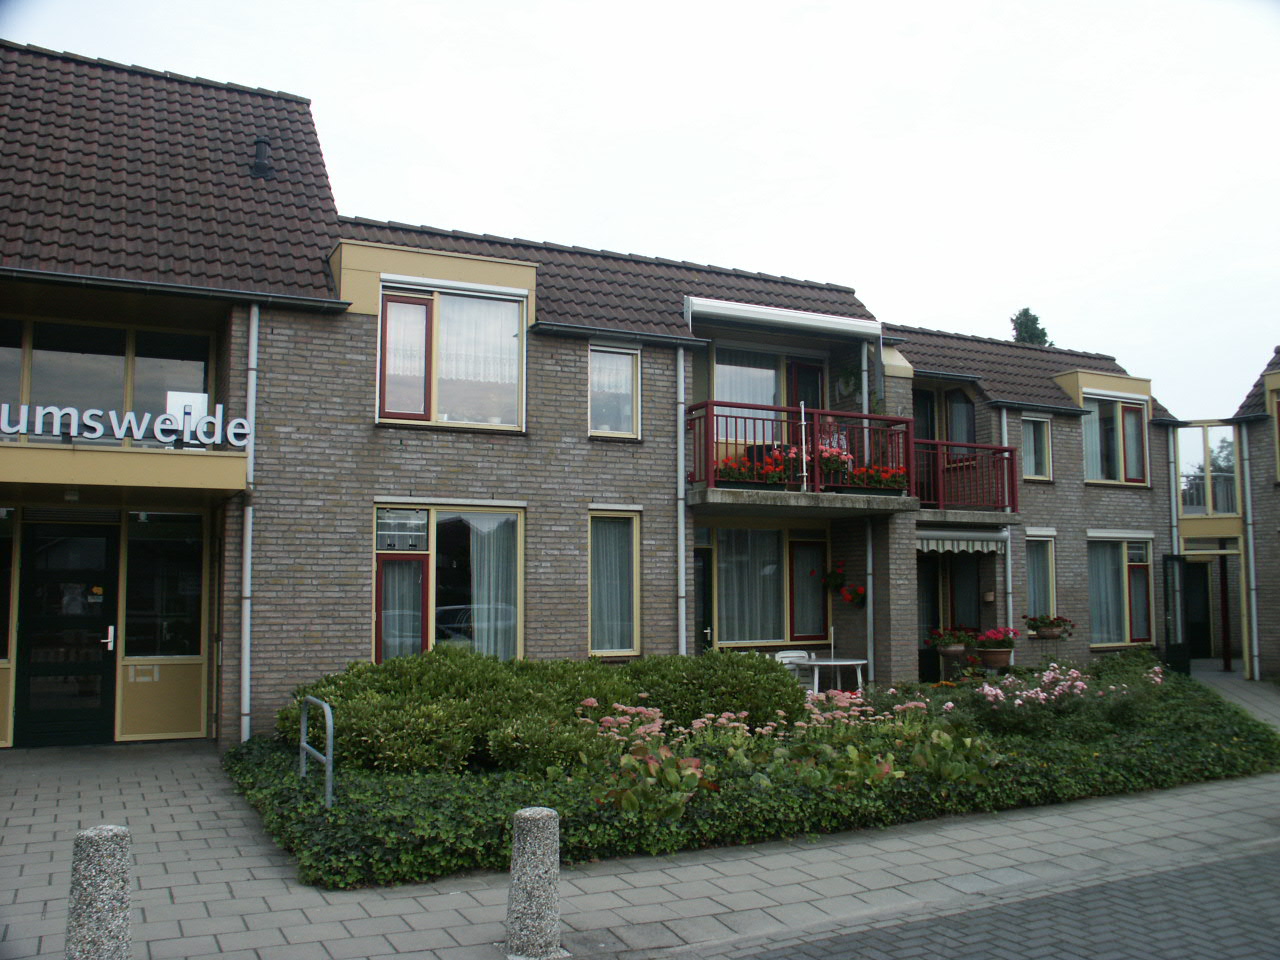 Dominee van Krevelenstraat 38, 7131 BX Lichtenvoorde, Nederland